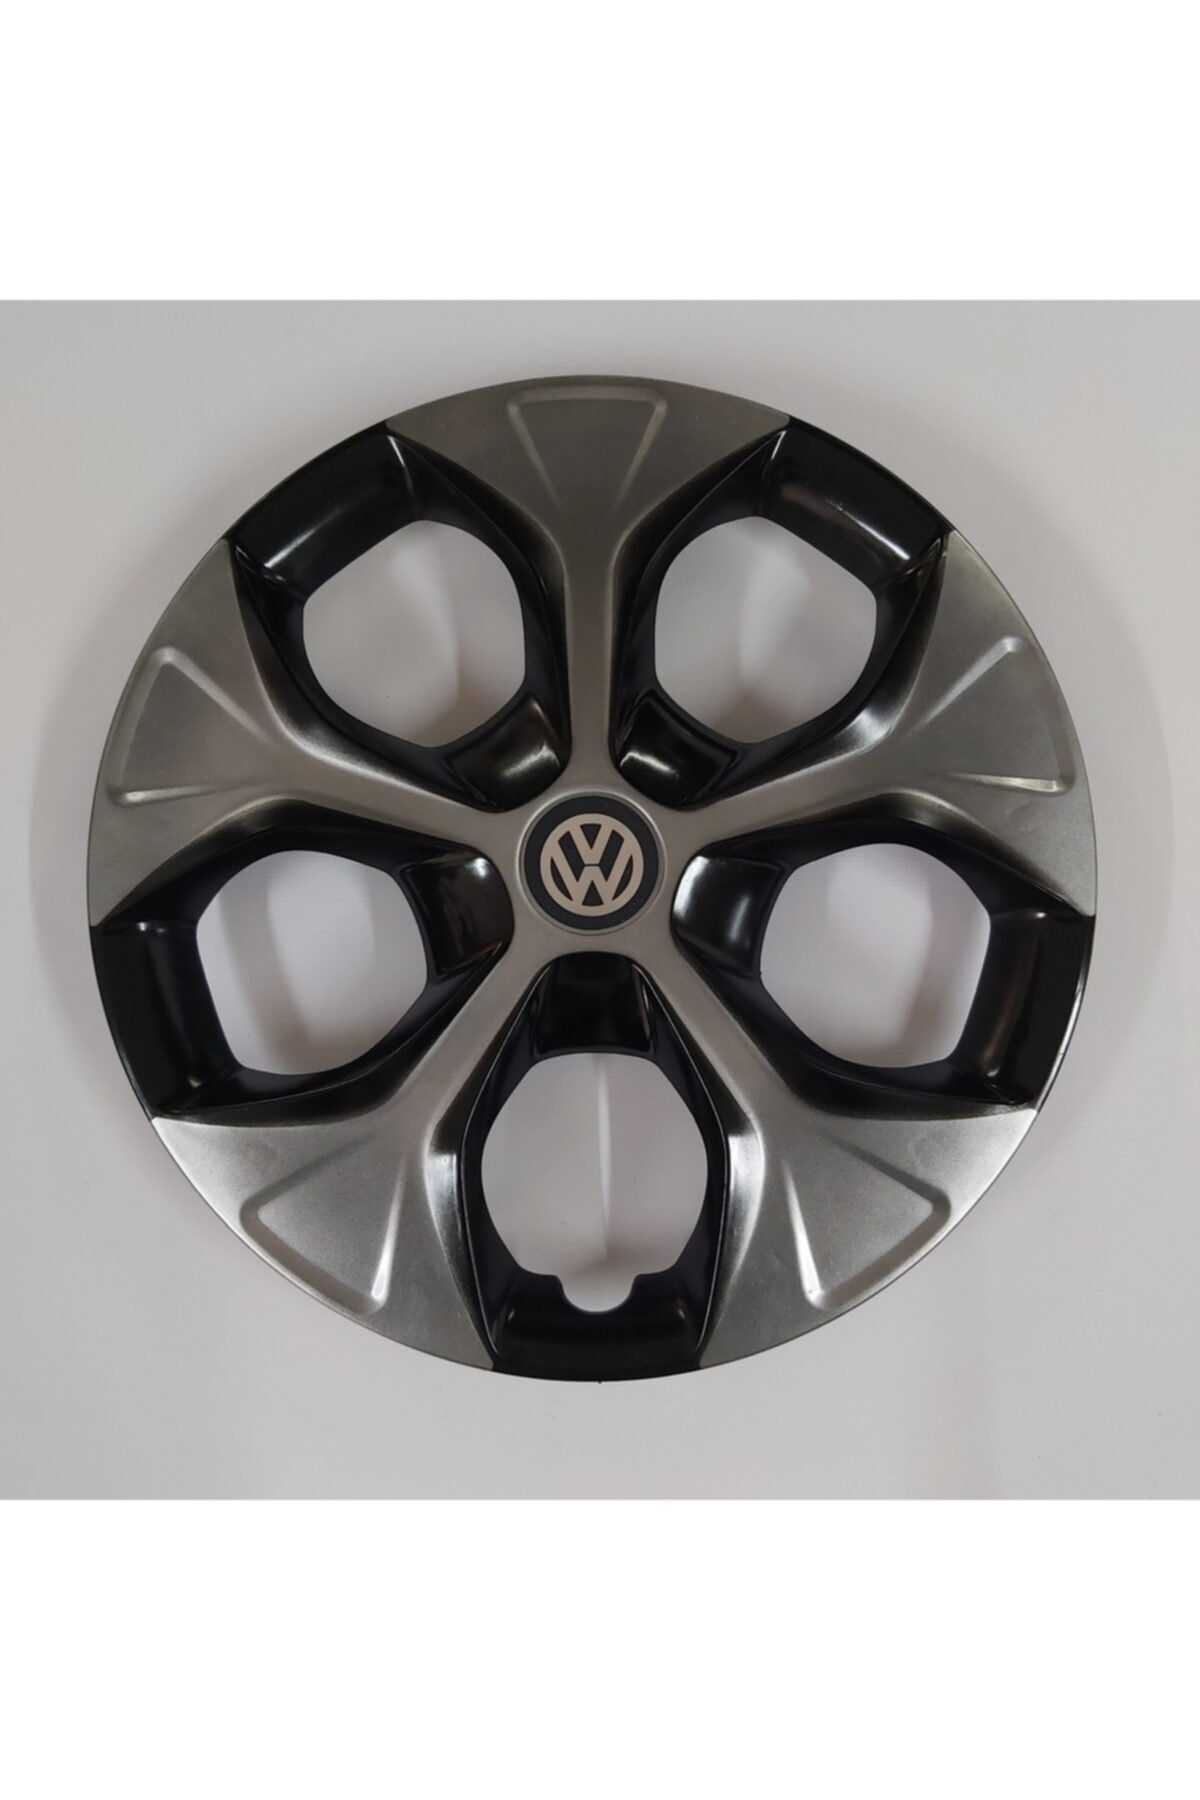 DGR Volkswagen Polo Araçlarına 14 Inç Jant Kapağı